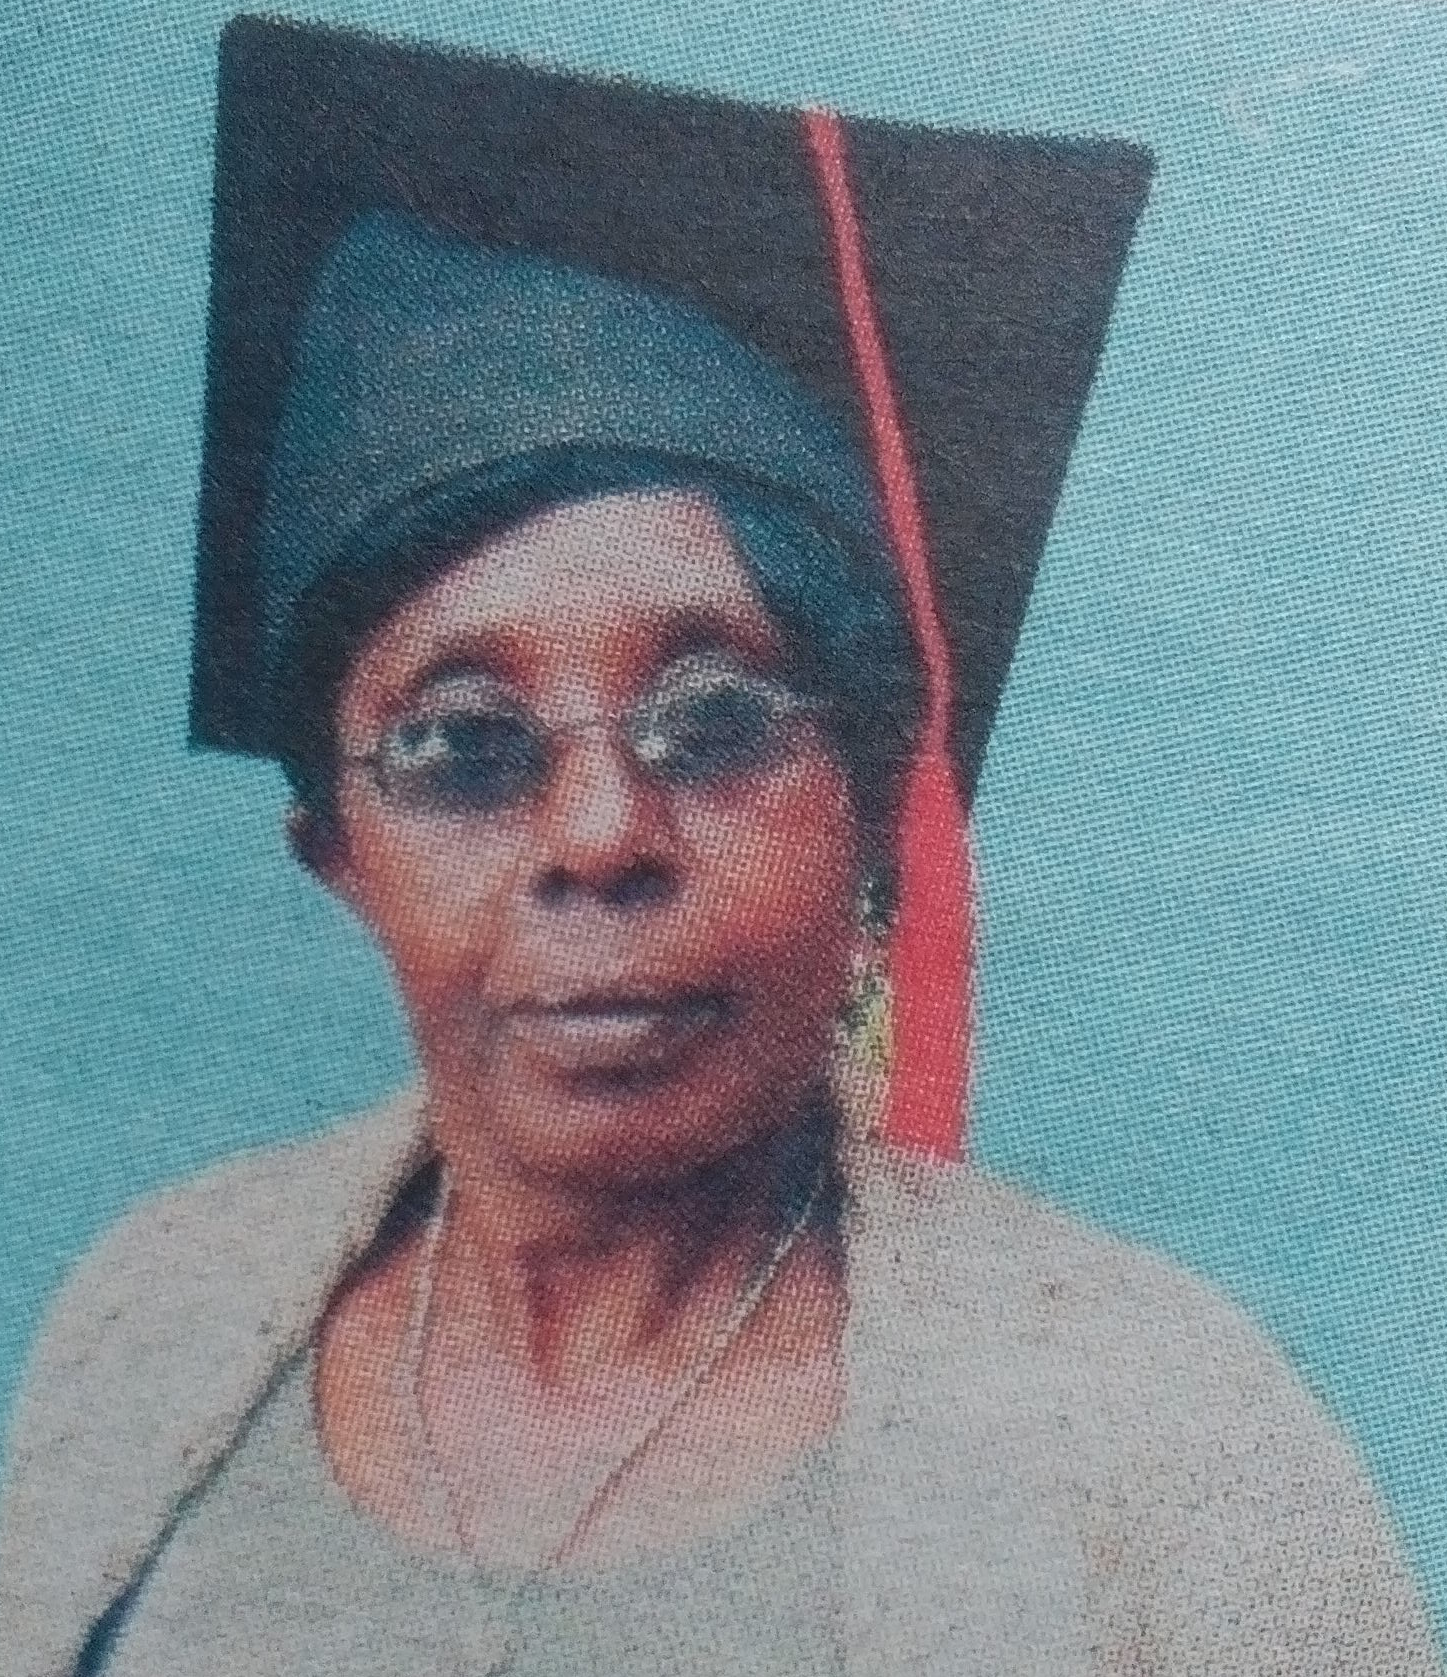 Obituary Image of Mary Wambui Serian